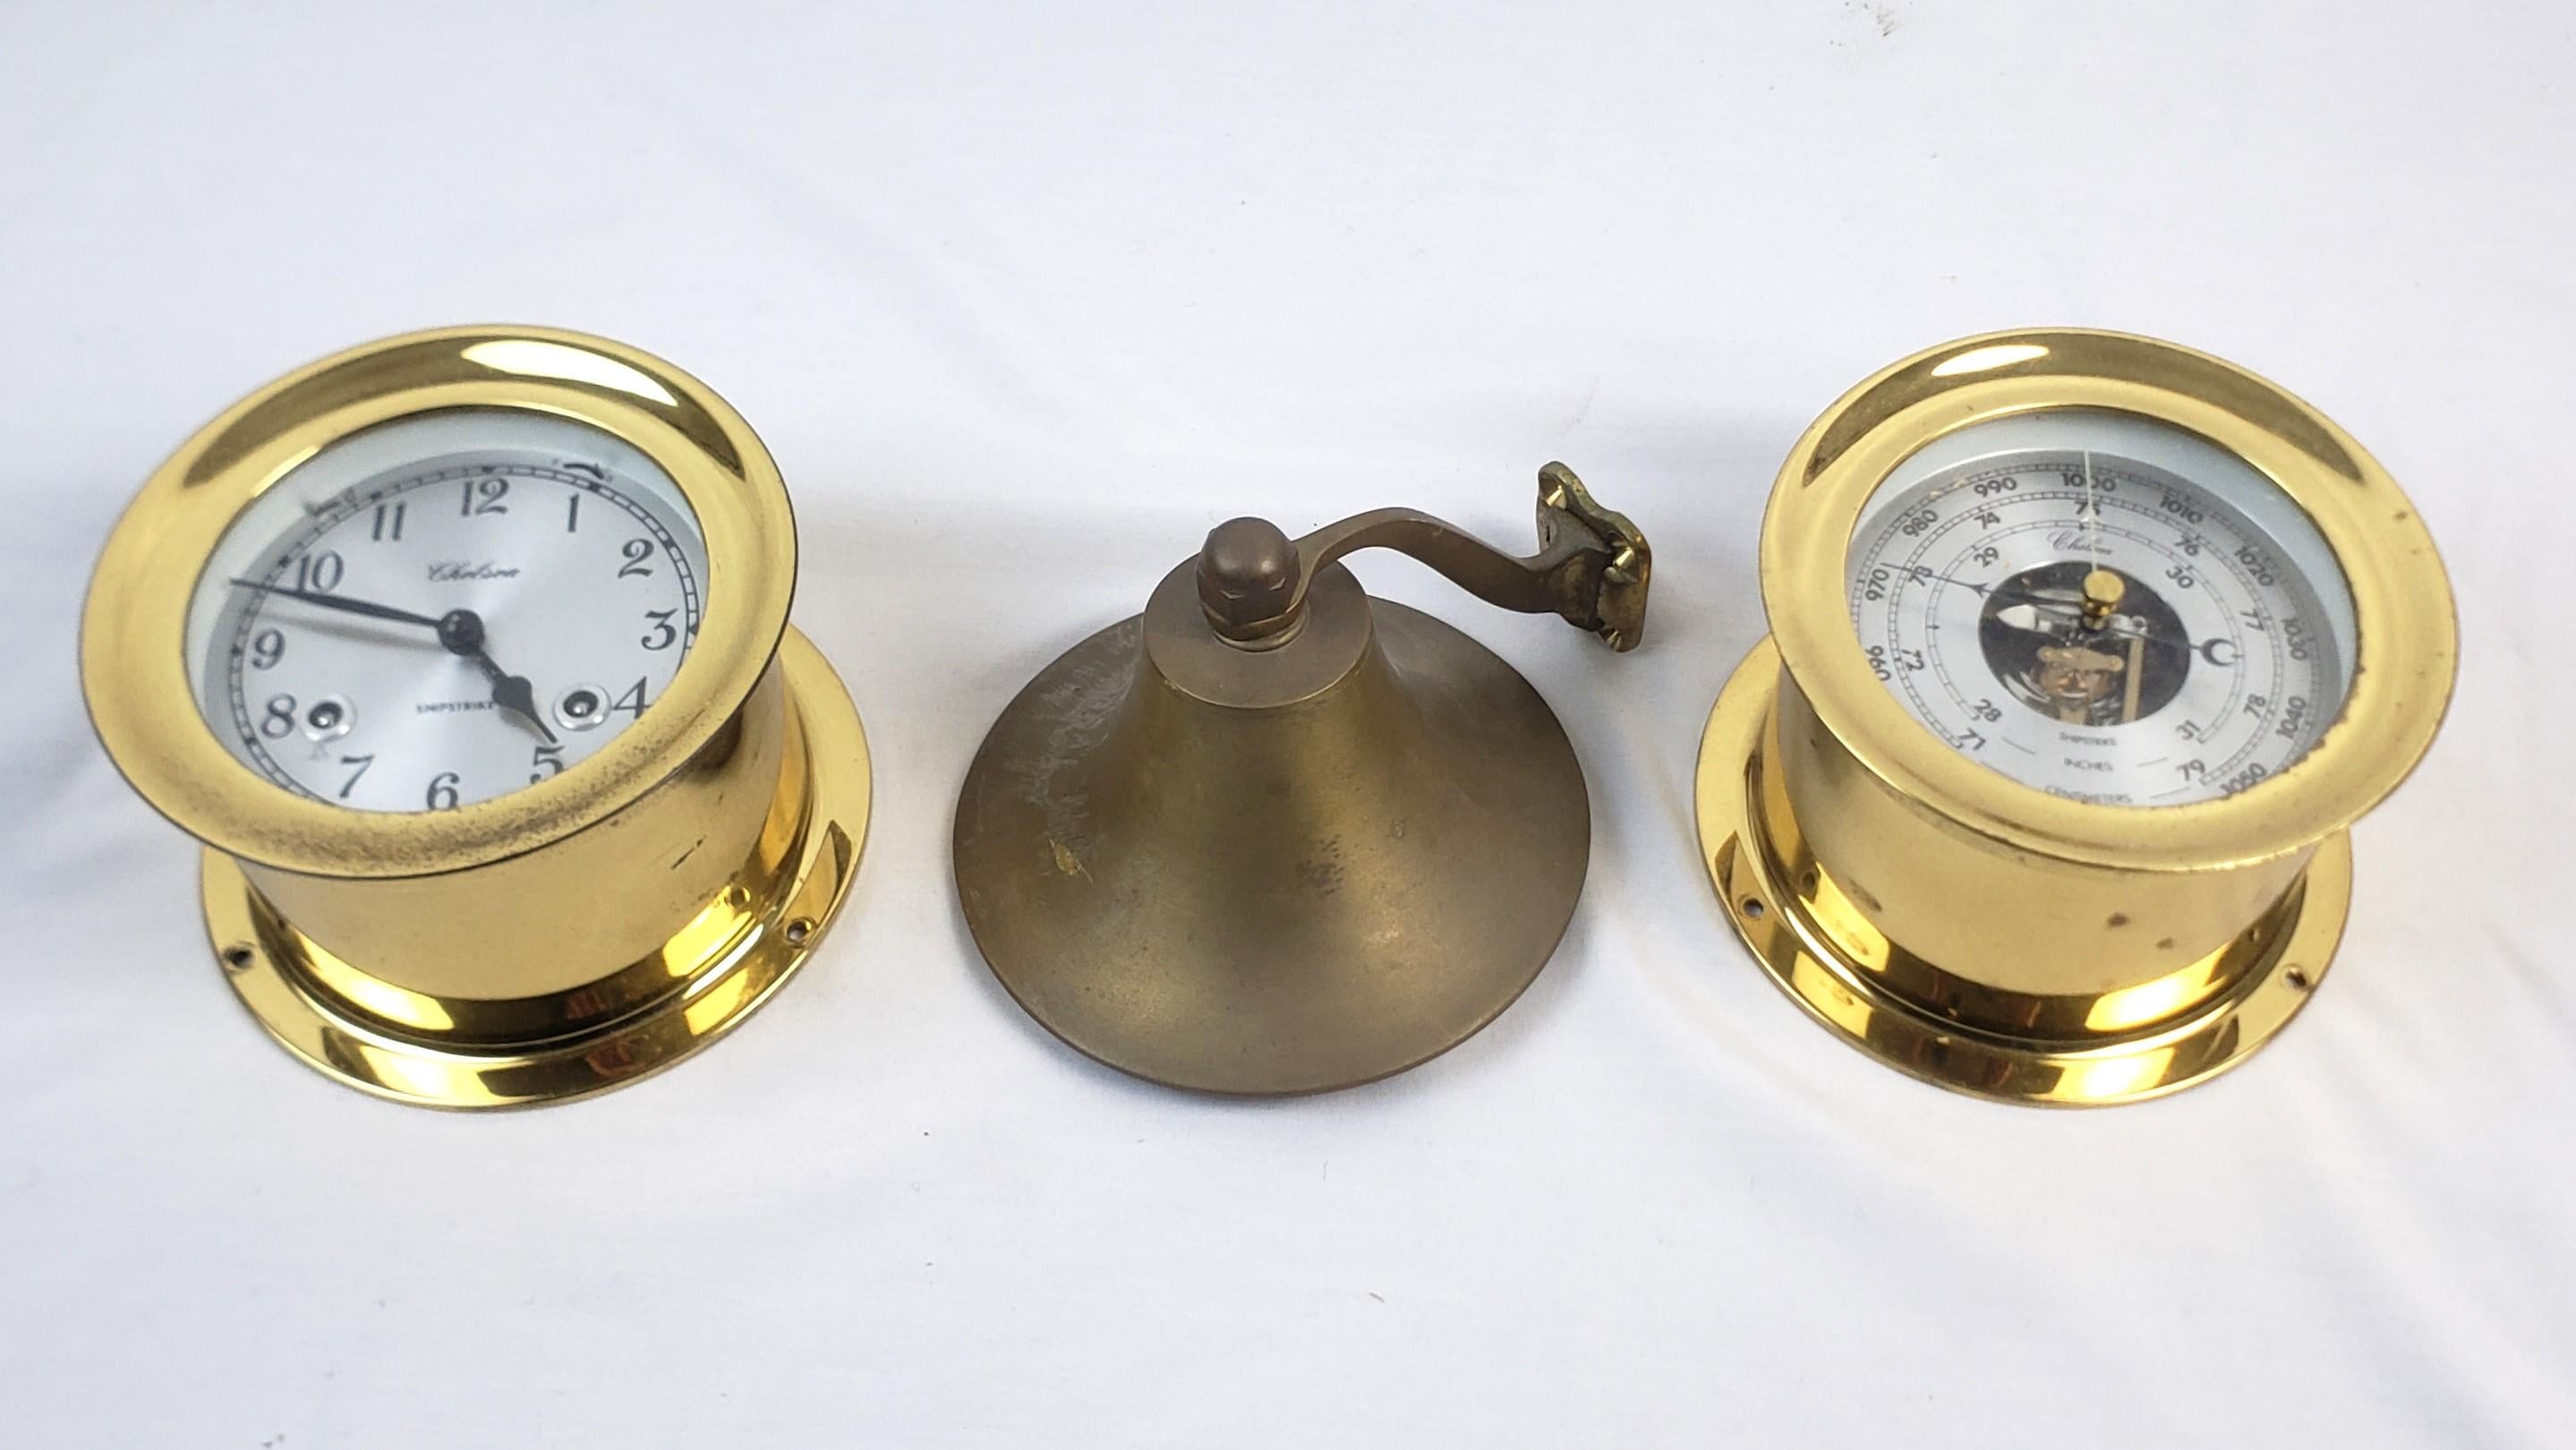 Diese antike nautische Messing-Schiffsuhr und das Barometer wurden von der Chelsea Clock Company in den Vereinigten Staaten hergestellt. Sie stammen aus der Zeit um 1920 und sind im zeitgenössischen Stil gehalten. Die Glocke in dieser Gruppe weist